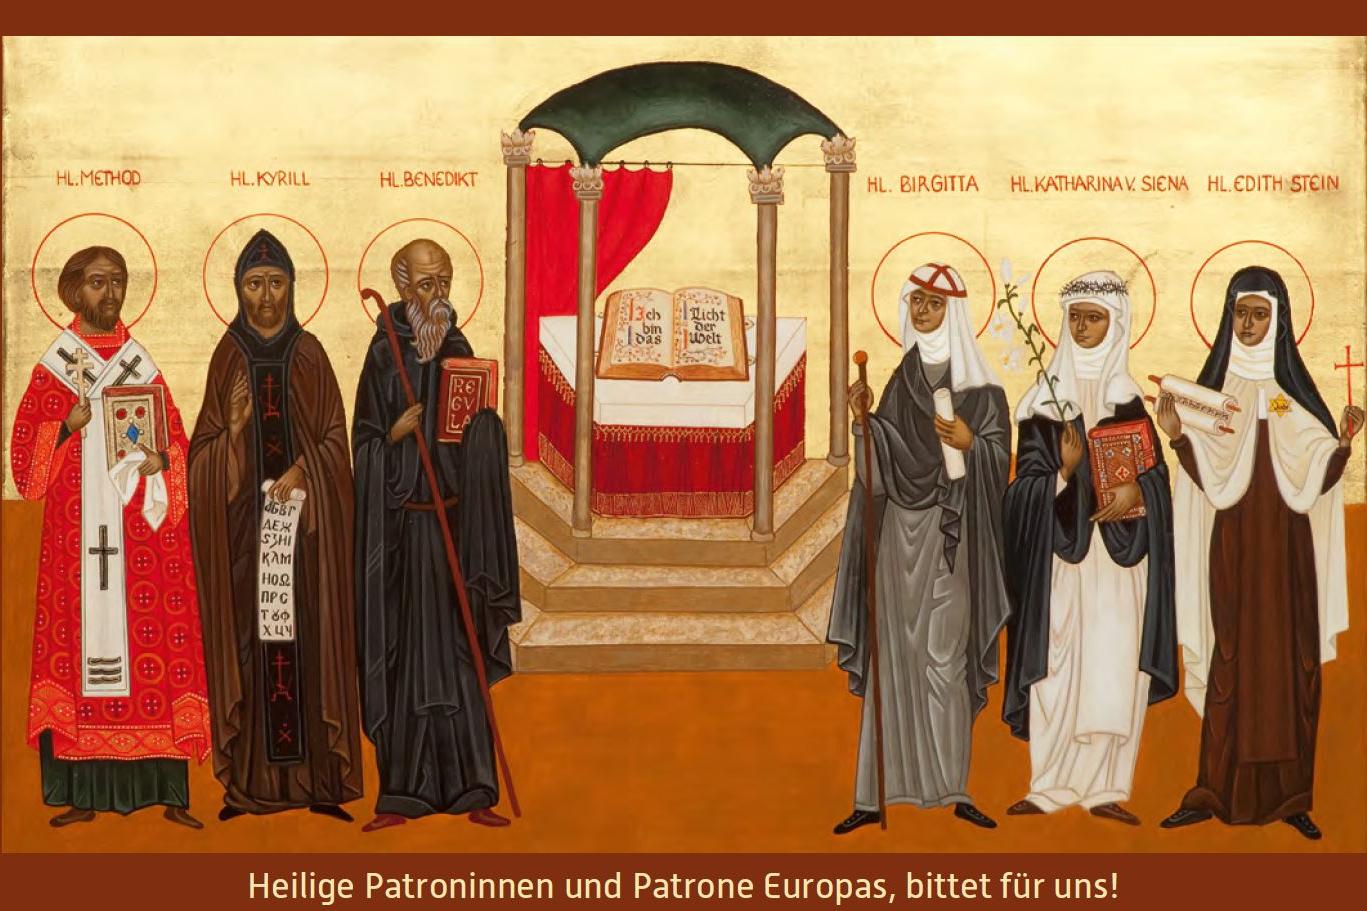 Patroninnen und Patrone Europas